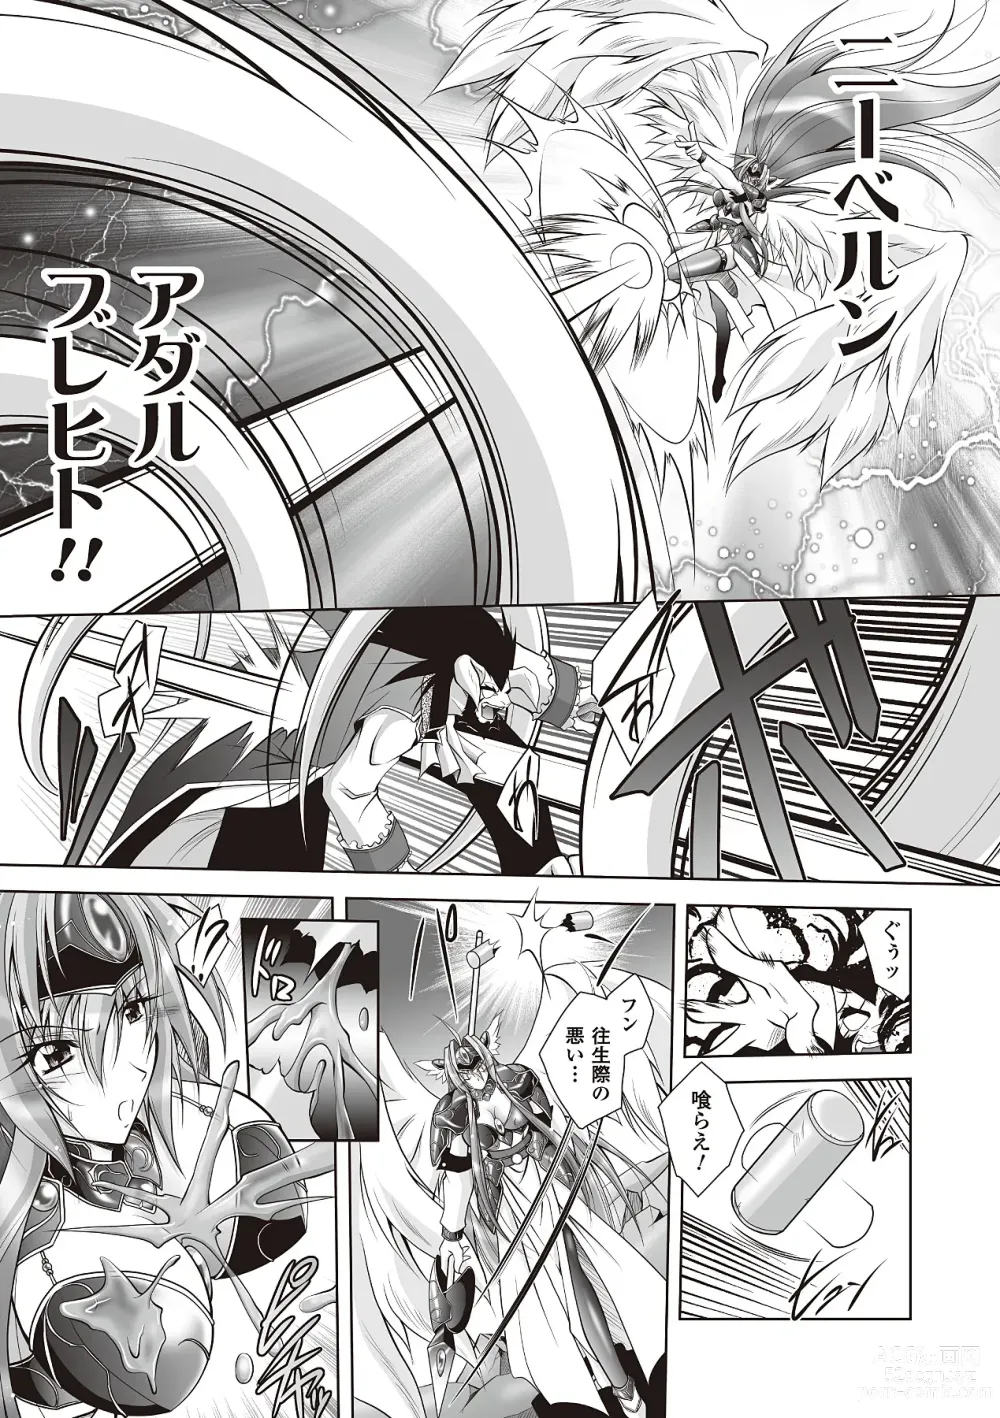 Page 7 of manga Datenshi-tachi no Rhapsody - Fallen Angels Rhapsody